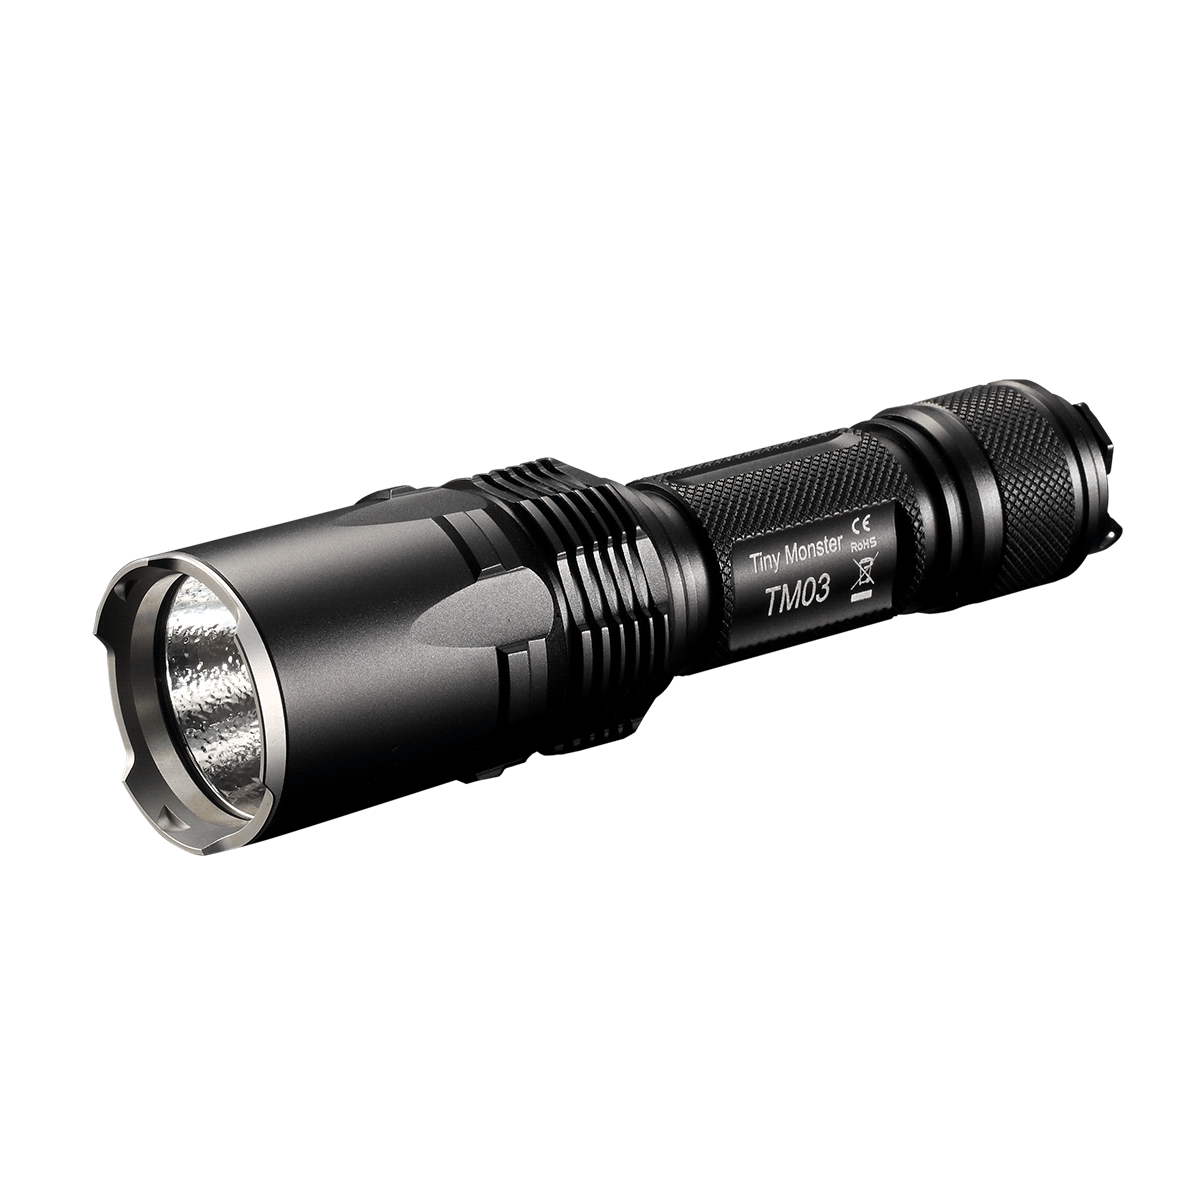 Nitecore TM03 CRI LED Flashlight w/2x IMR 18650 Batteries & UM10 Charger Combo 